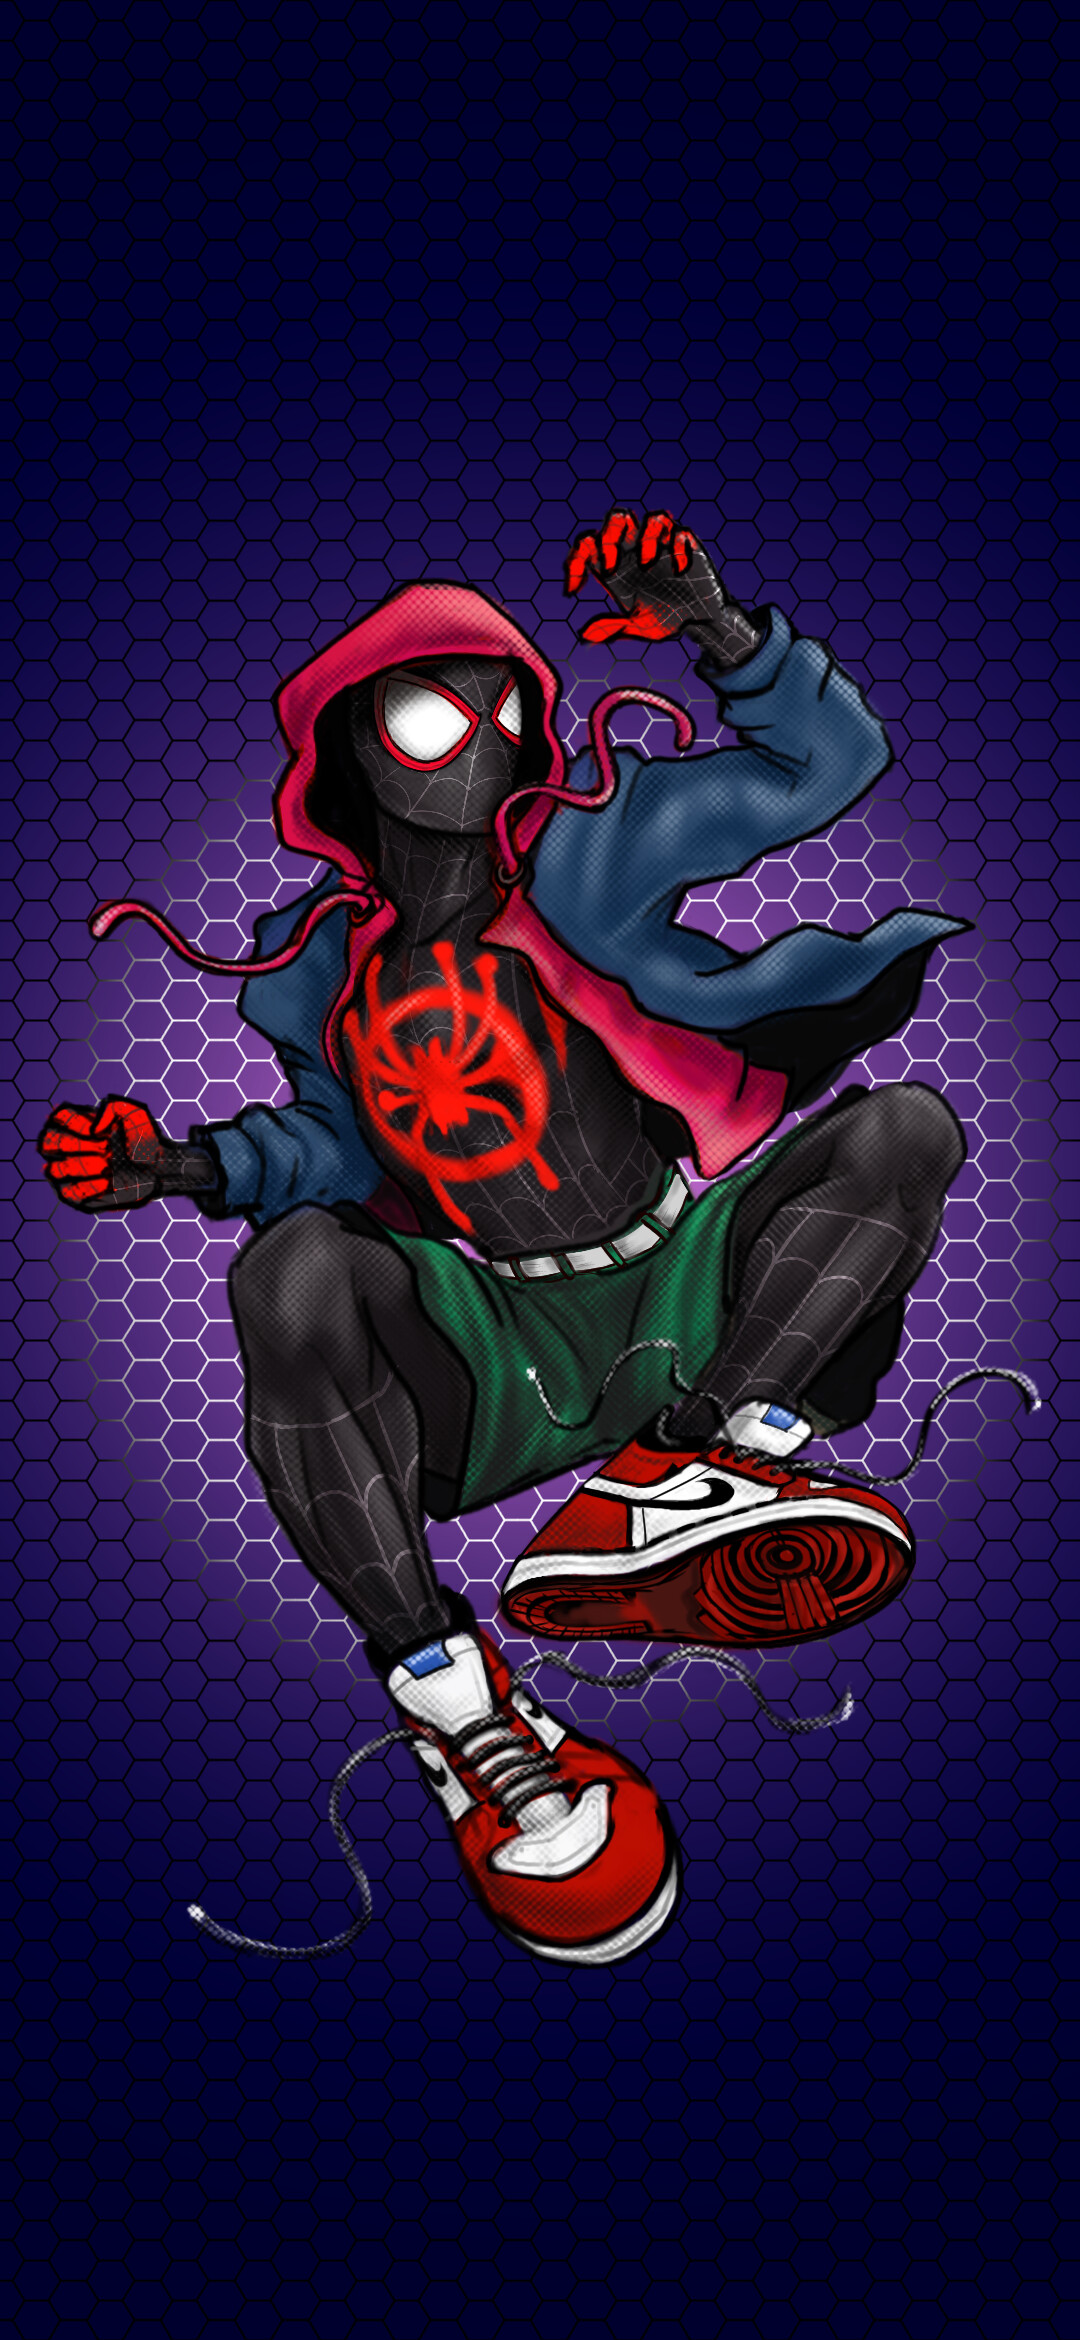 ArtStation - Spider-man: Miles Morales Wallpaper FHD+